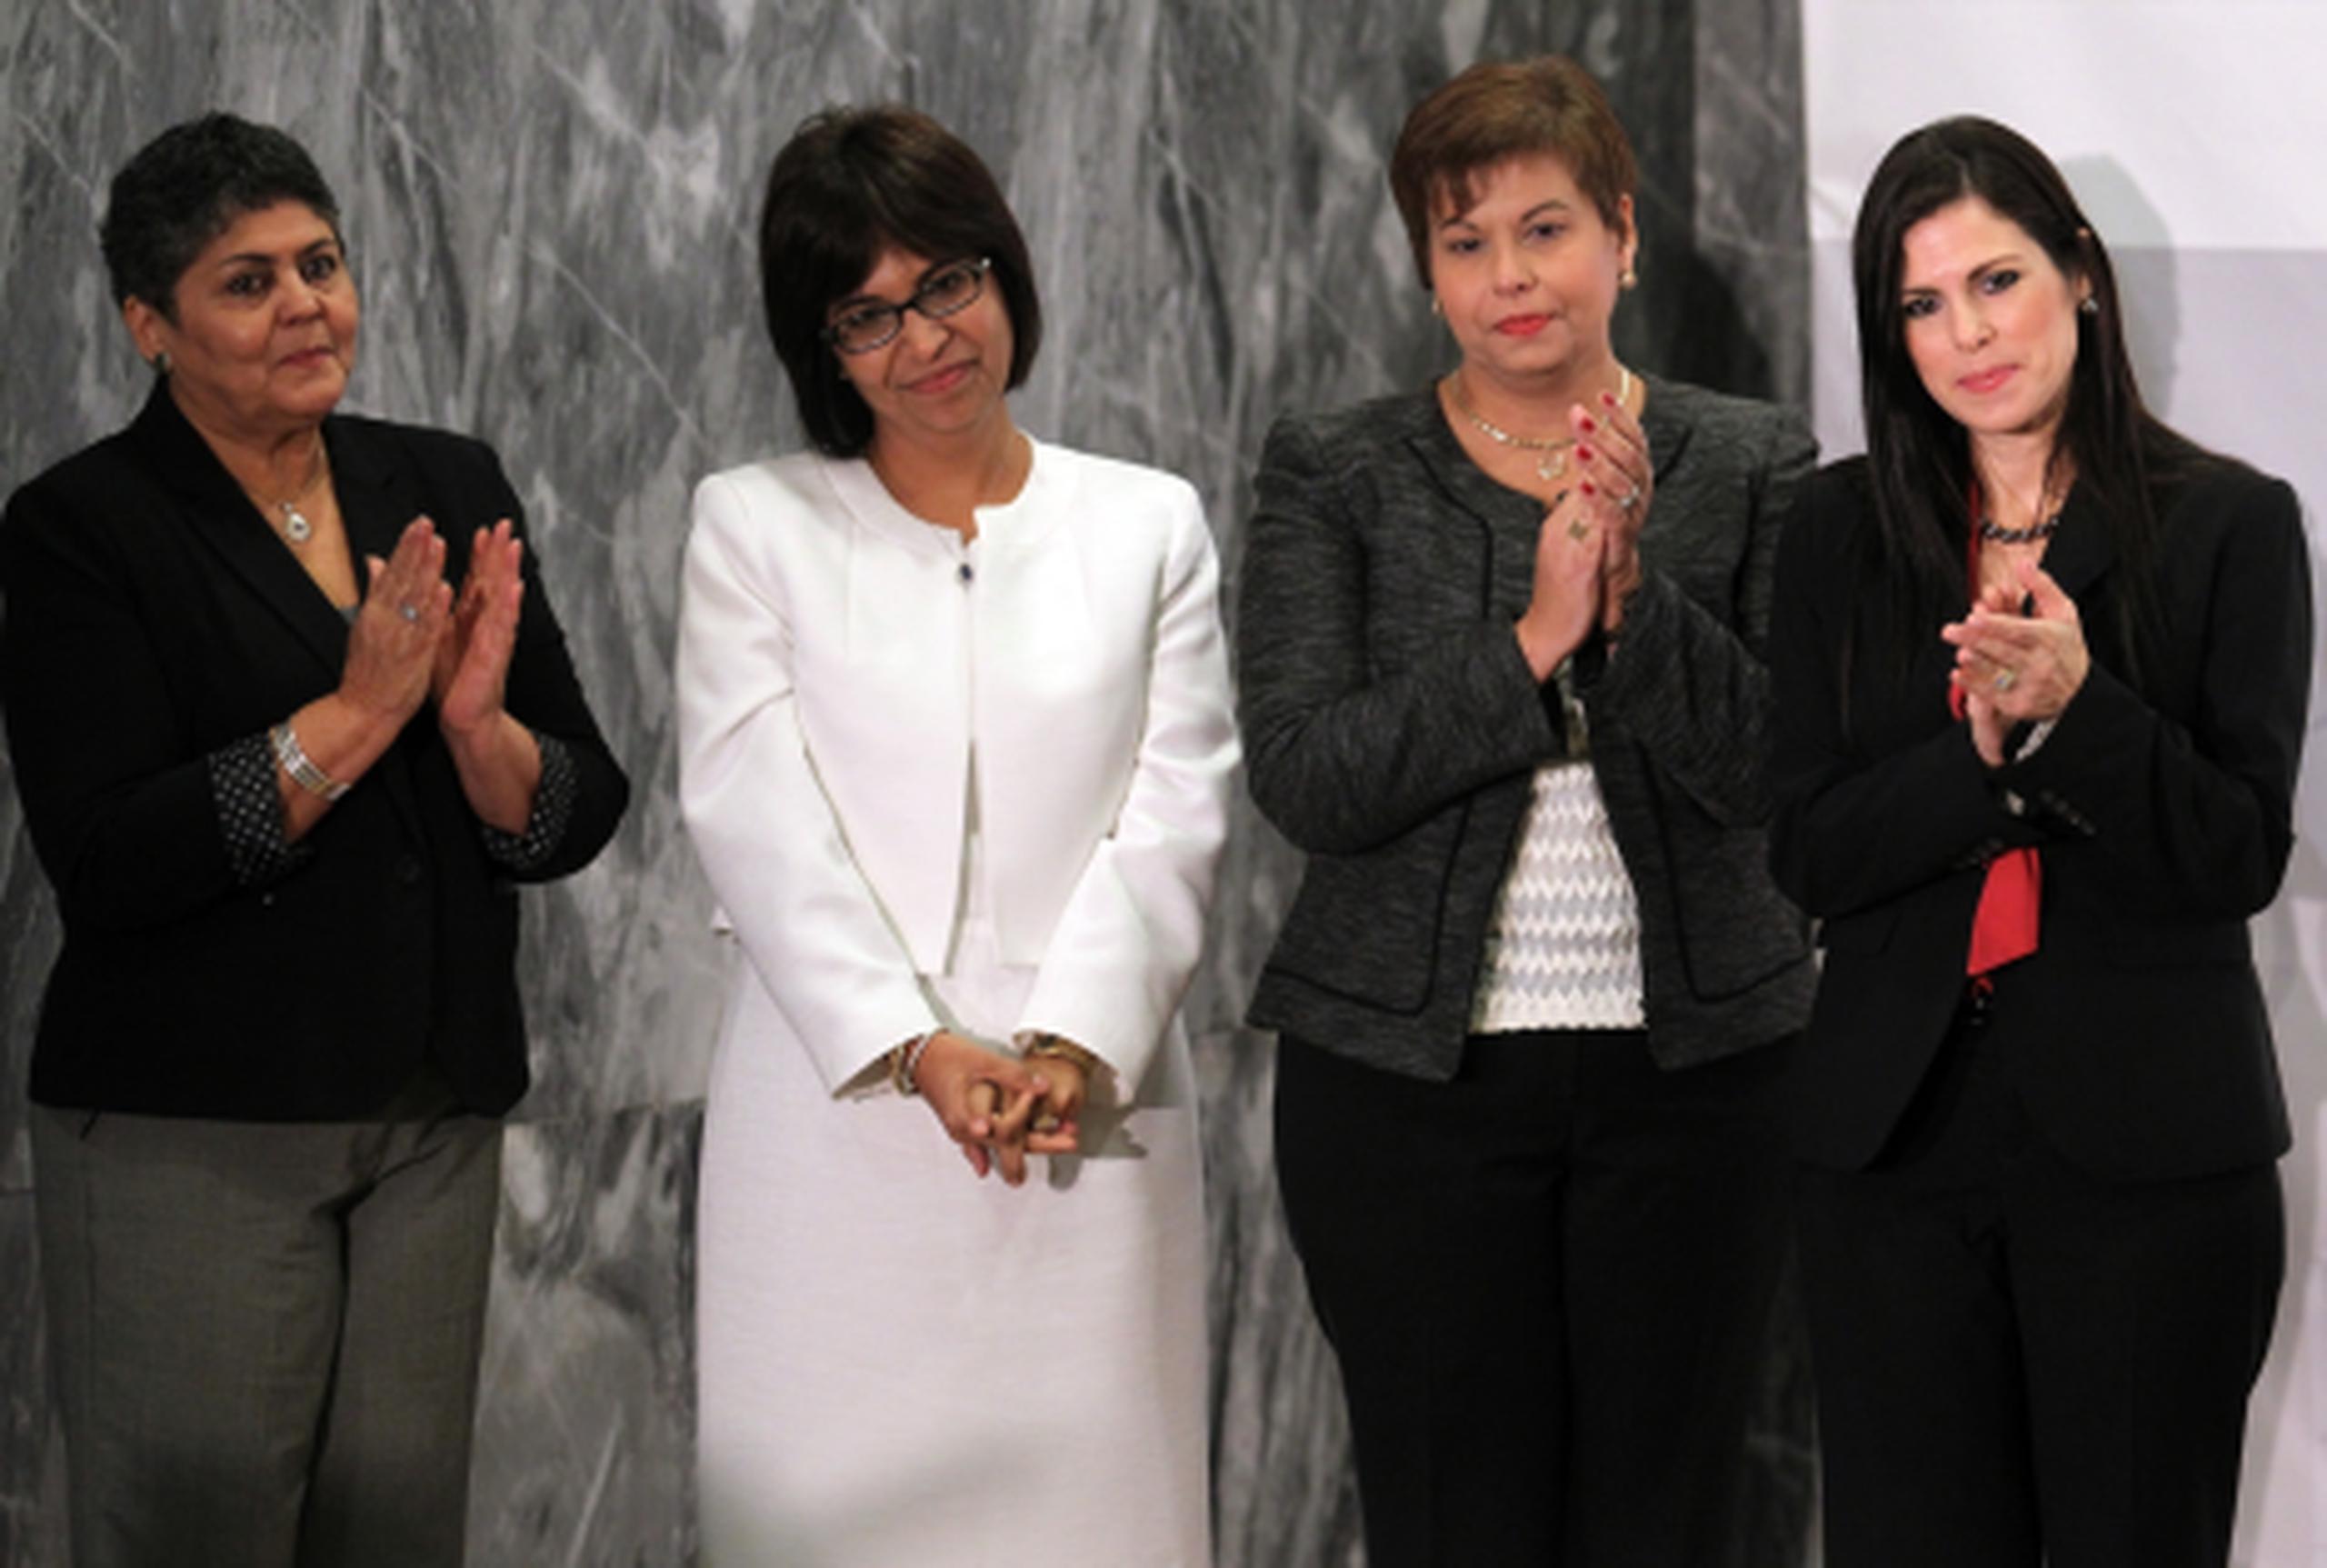 De izquierda a derecha, Marta Elsa Fernández, Vanessa Pintado, Olga Bernardy y  Rosabelle Padín han sido nombradas a importantes puestos por el gobernador entrante. (Archivo)